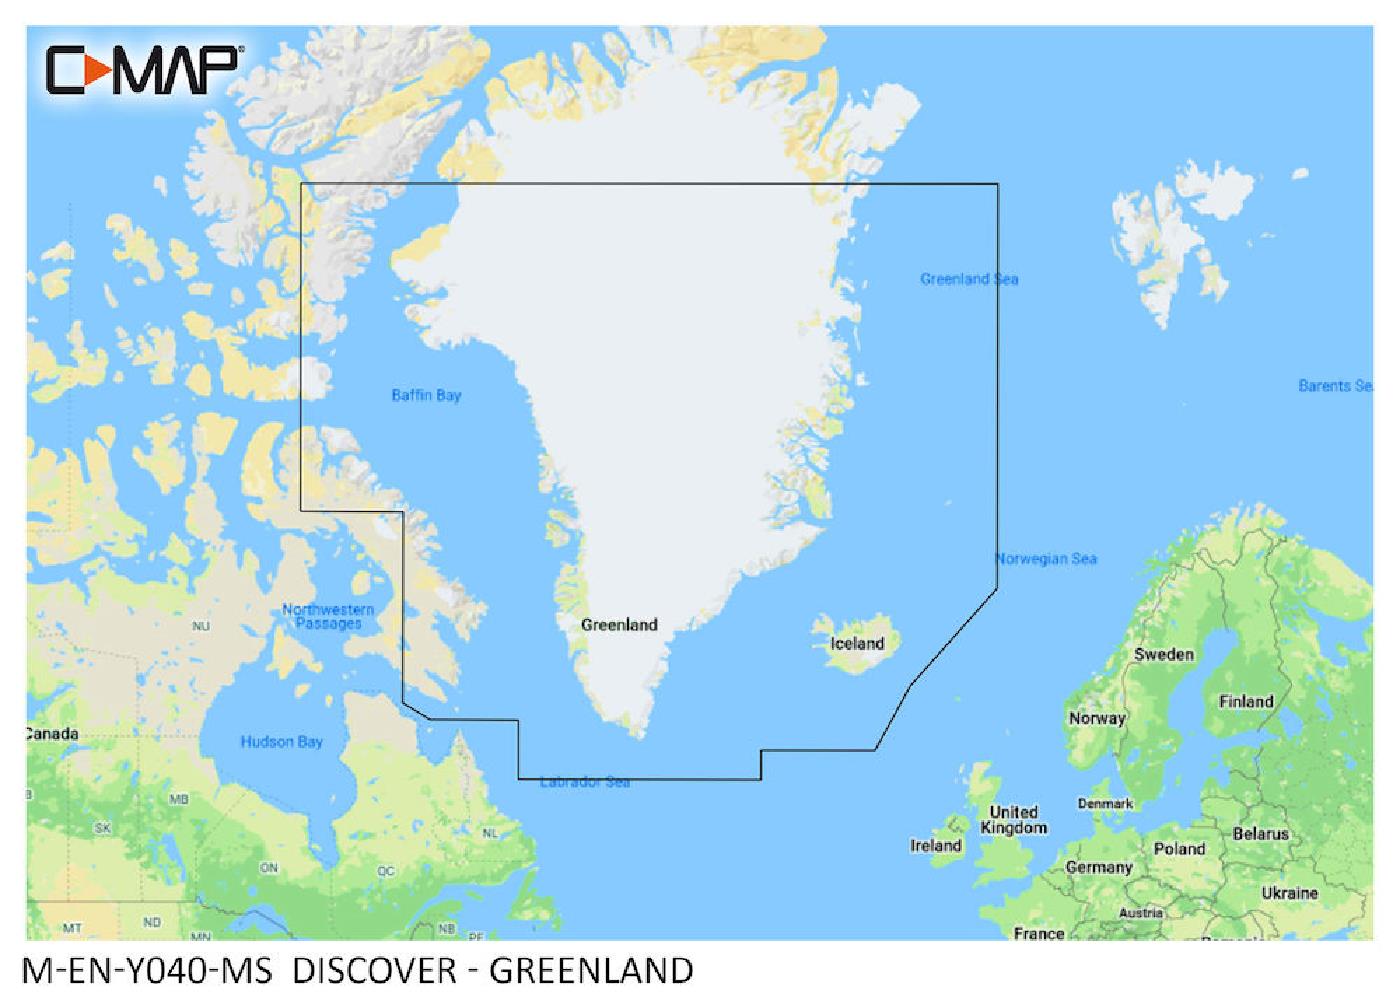 C-MAP Discover Greenland M-EN-Y040